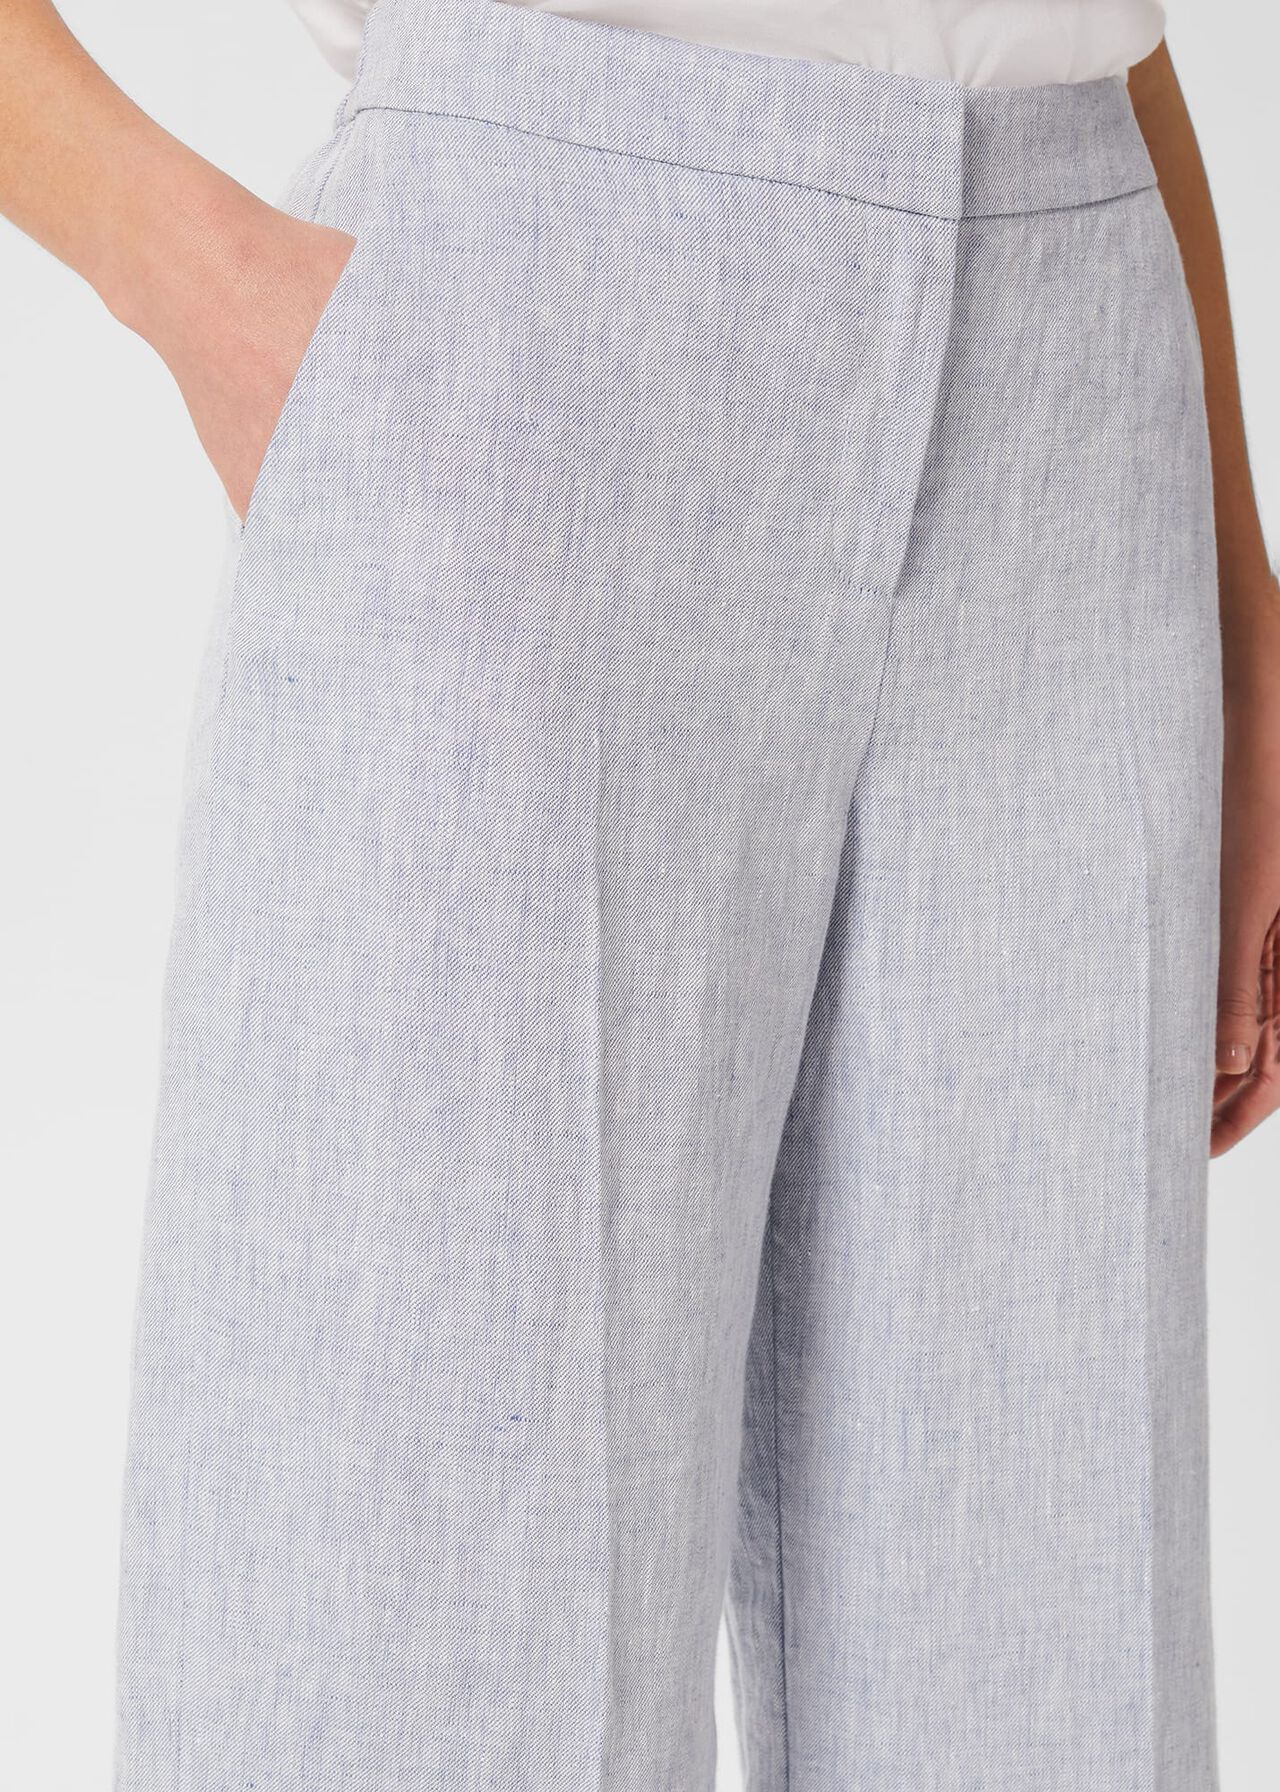 Maeve Linen Pants, Pale Blue, hi-res